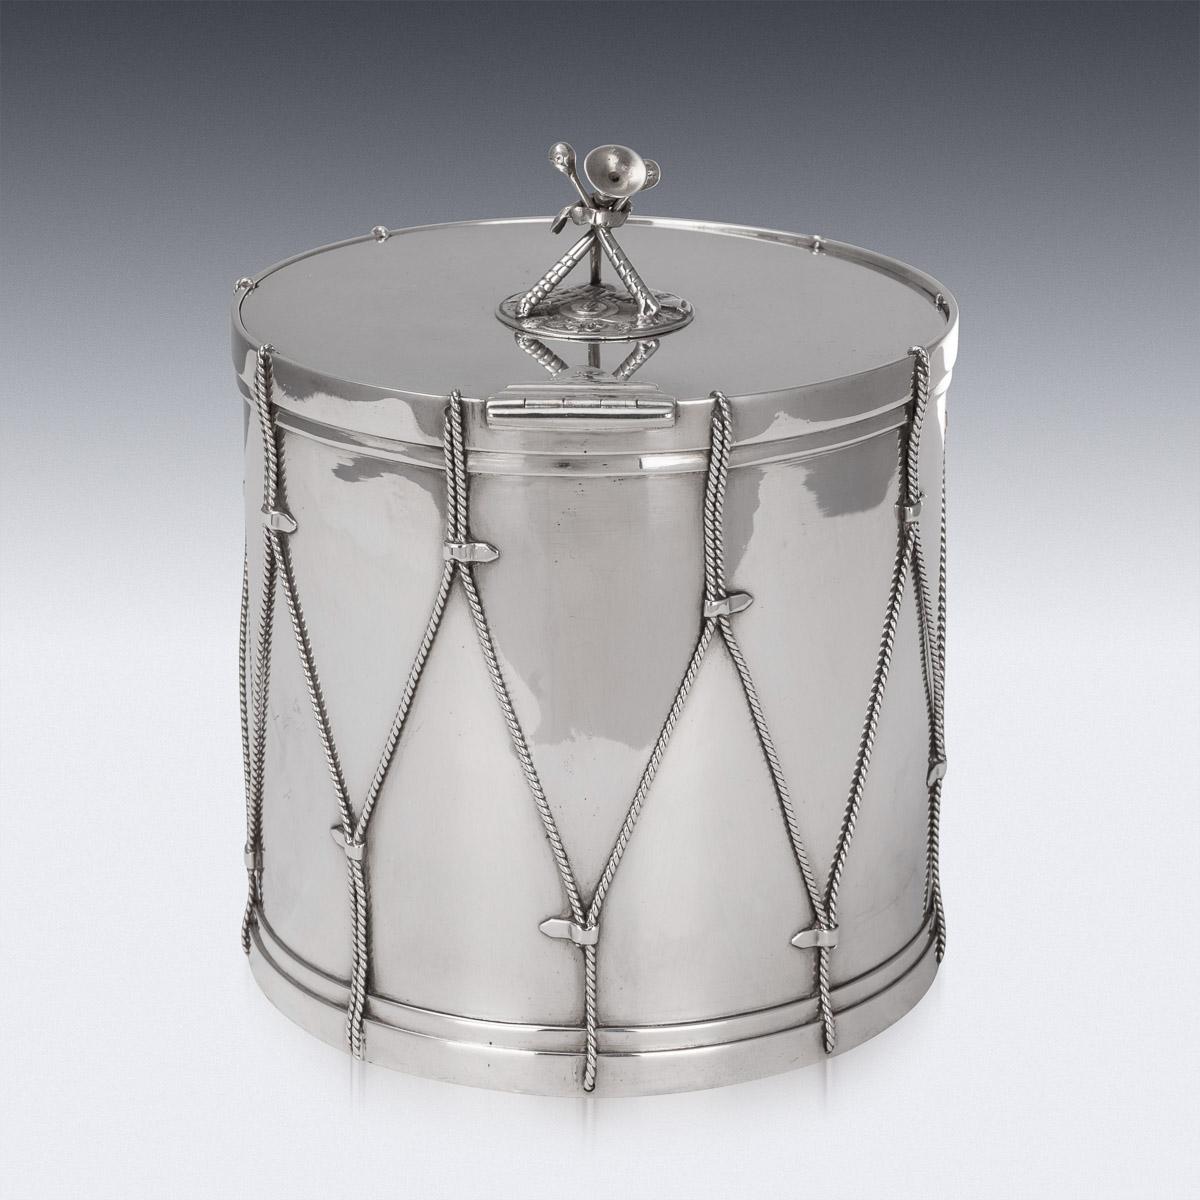 British 19th Century Victorian Silver Plated Regimental Drum Ice Bucket, c.1890